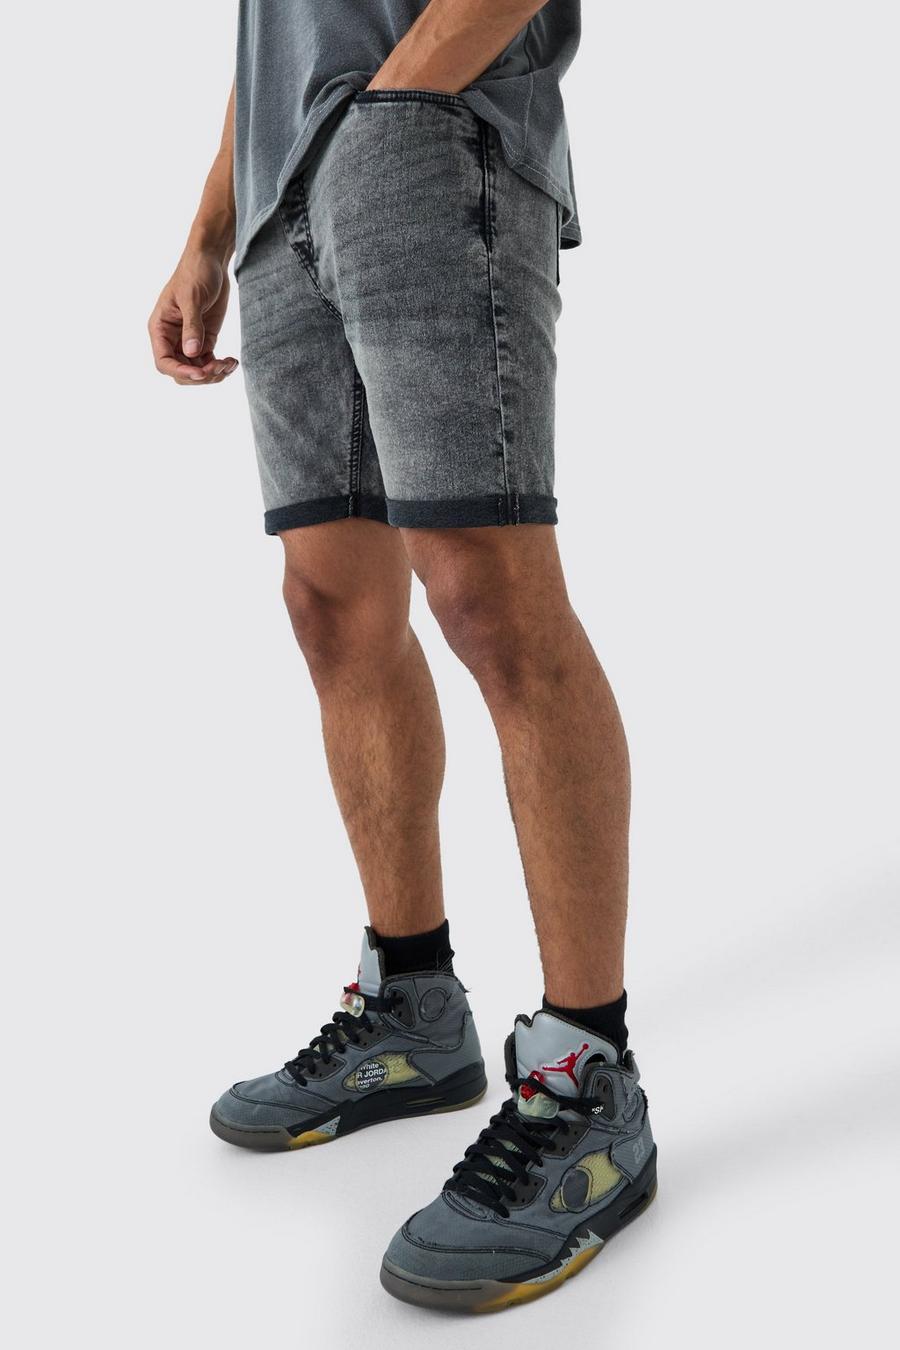 Pantalones cortos vaqueros pitillo elásticos en color carbón, Charcoal image number 1